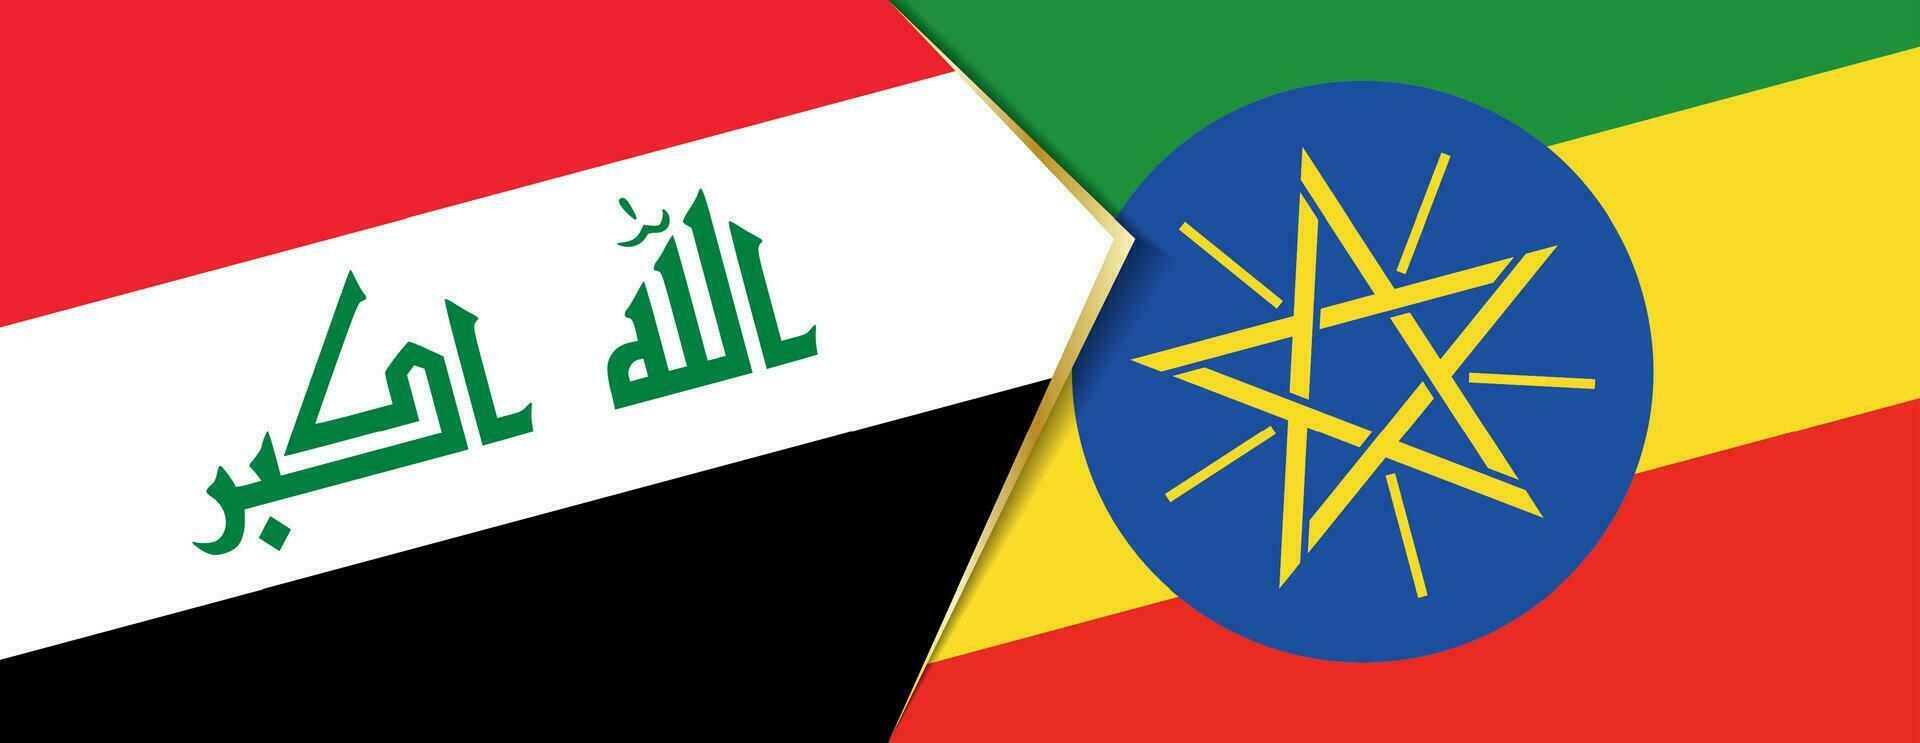 Iraque e Etiópia bandeiras, dois vetor bandeiras.